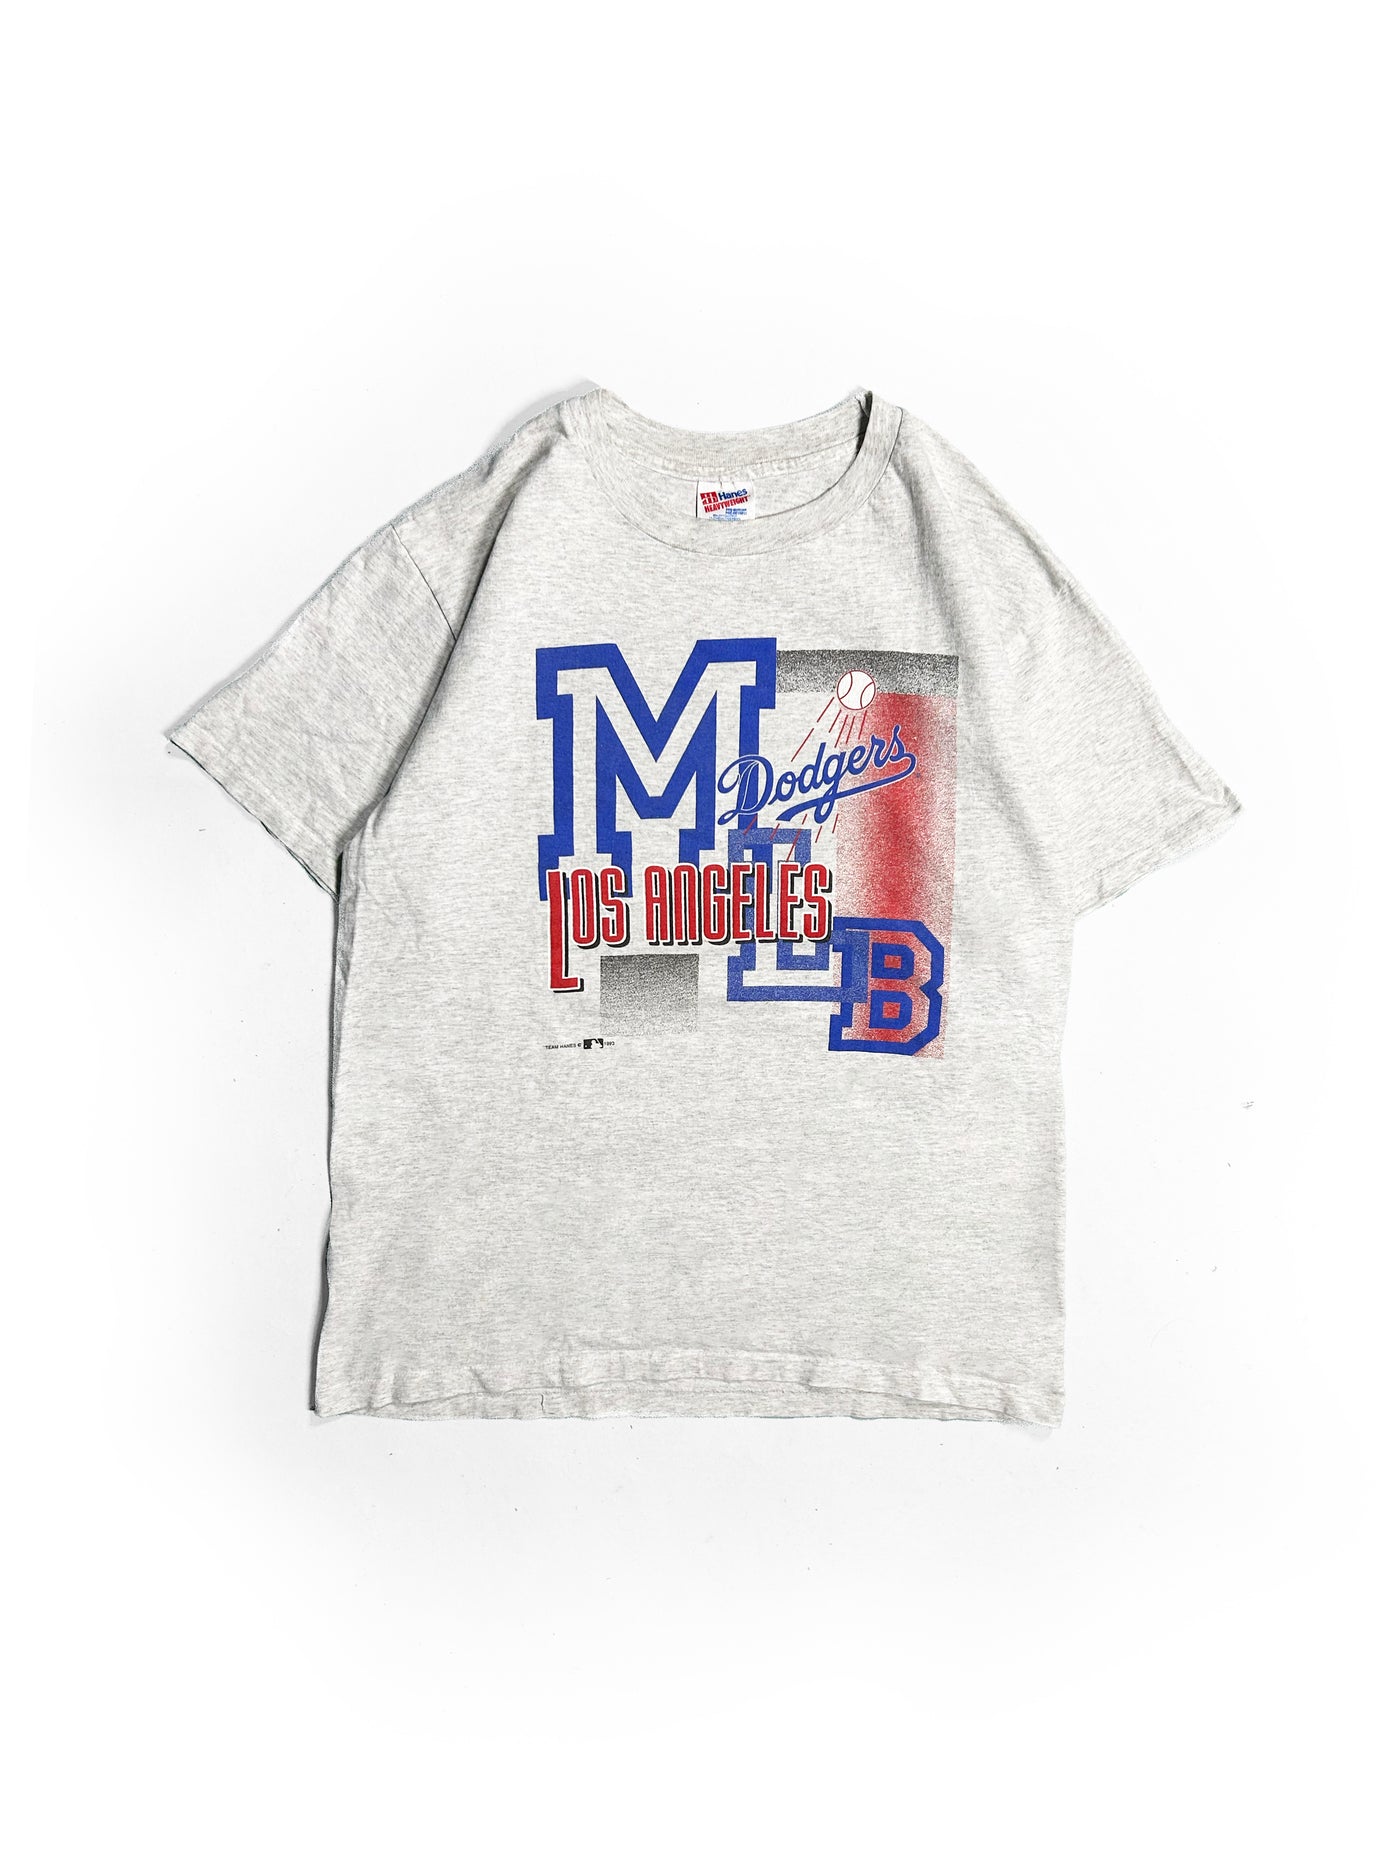 Vintage 1993 Dodgers MLB T-Shirt